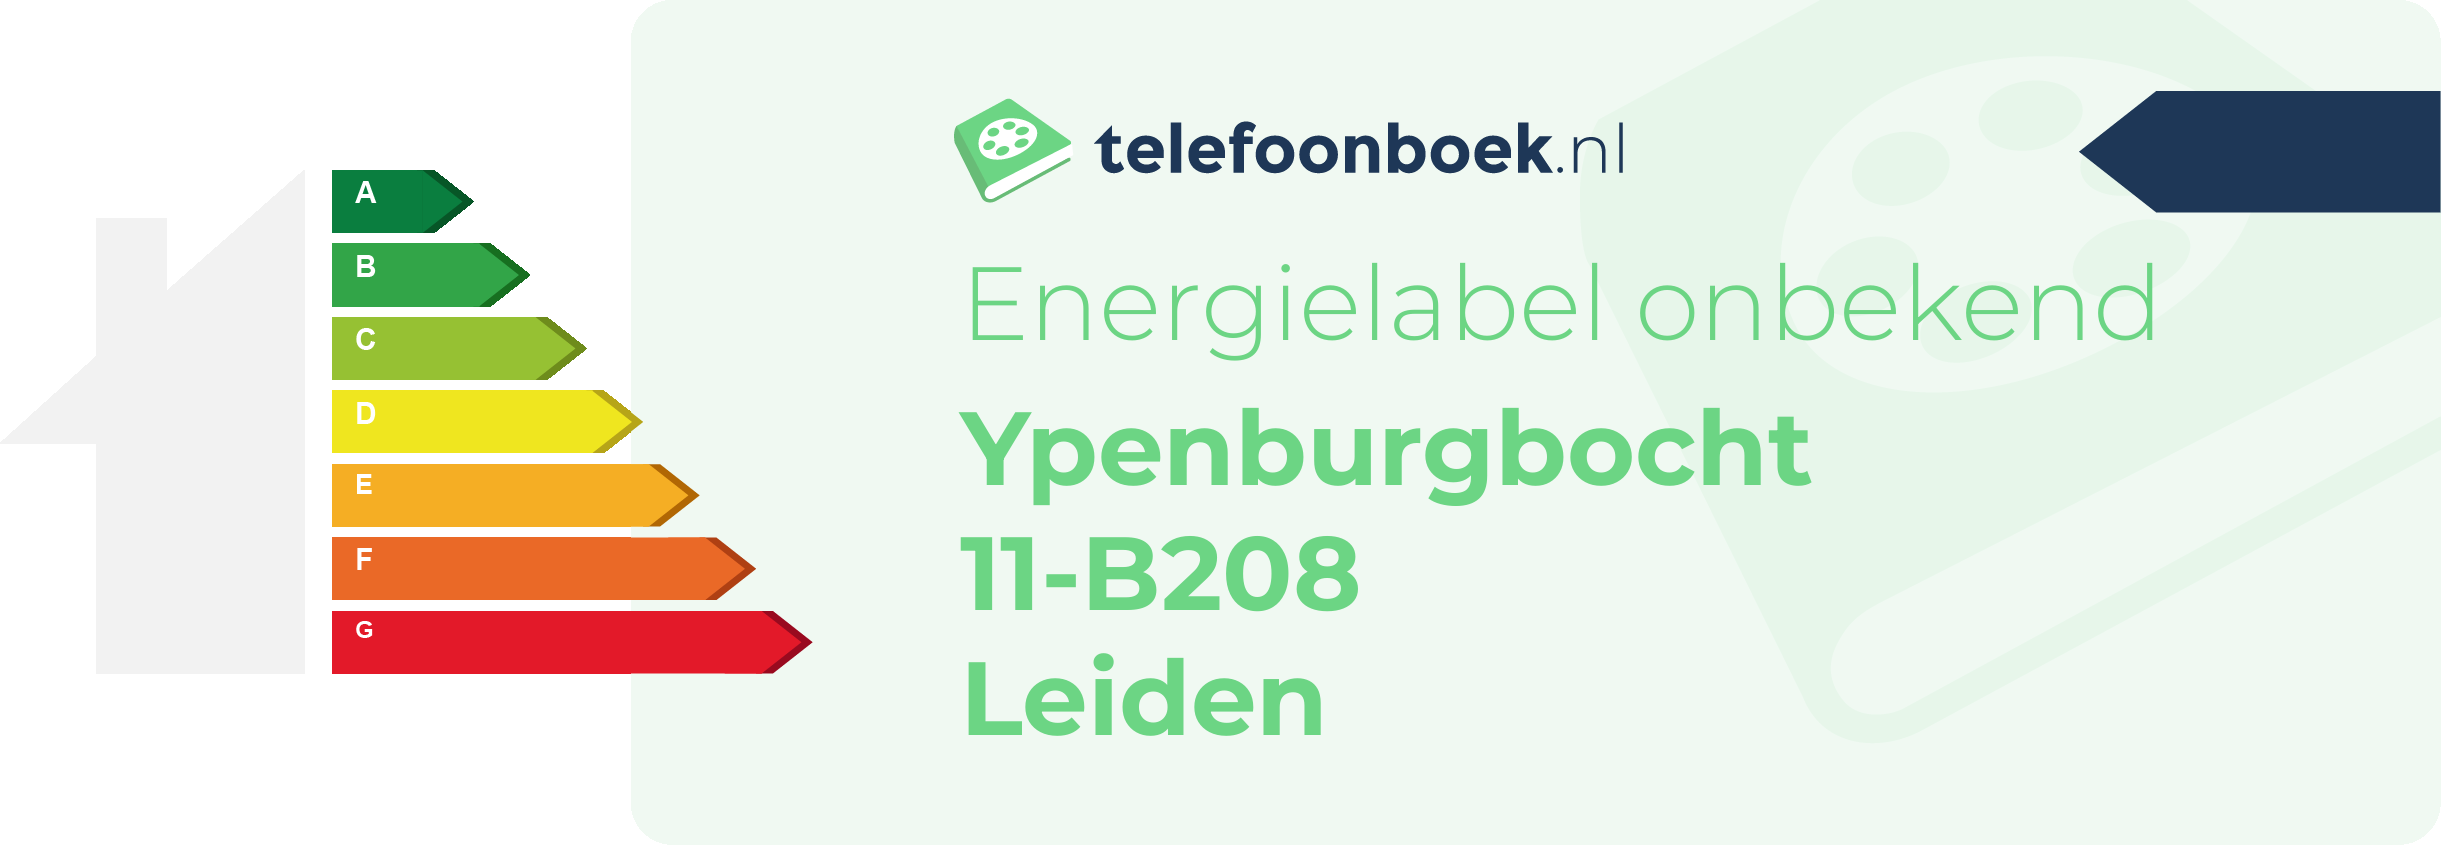 Energielabel Ypenburgbocht 11-B208 Leiden